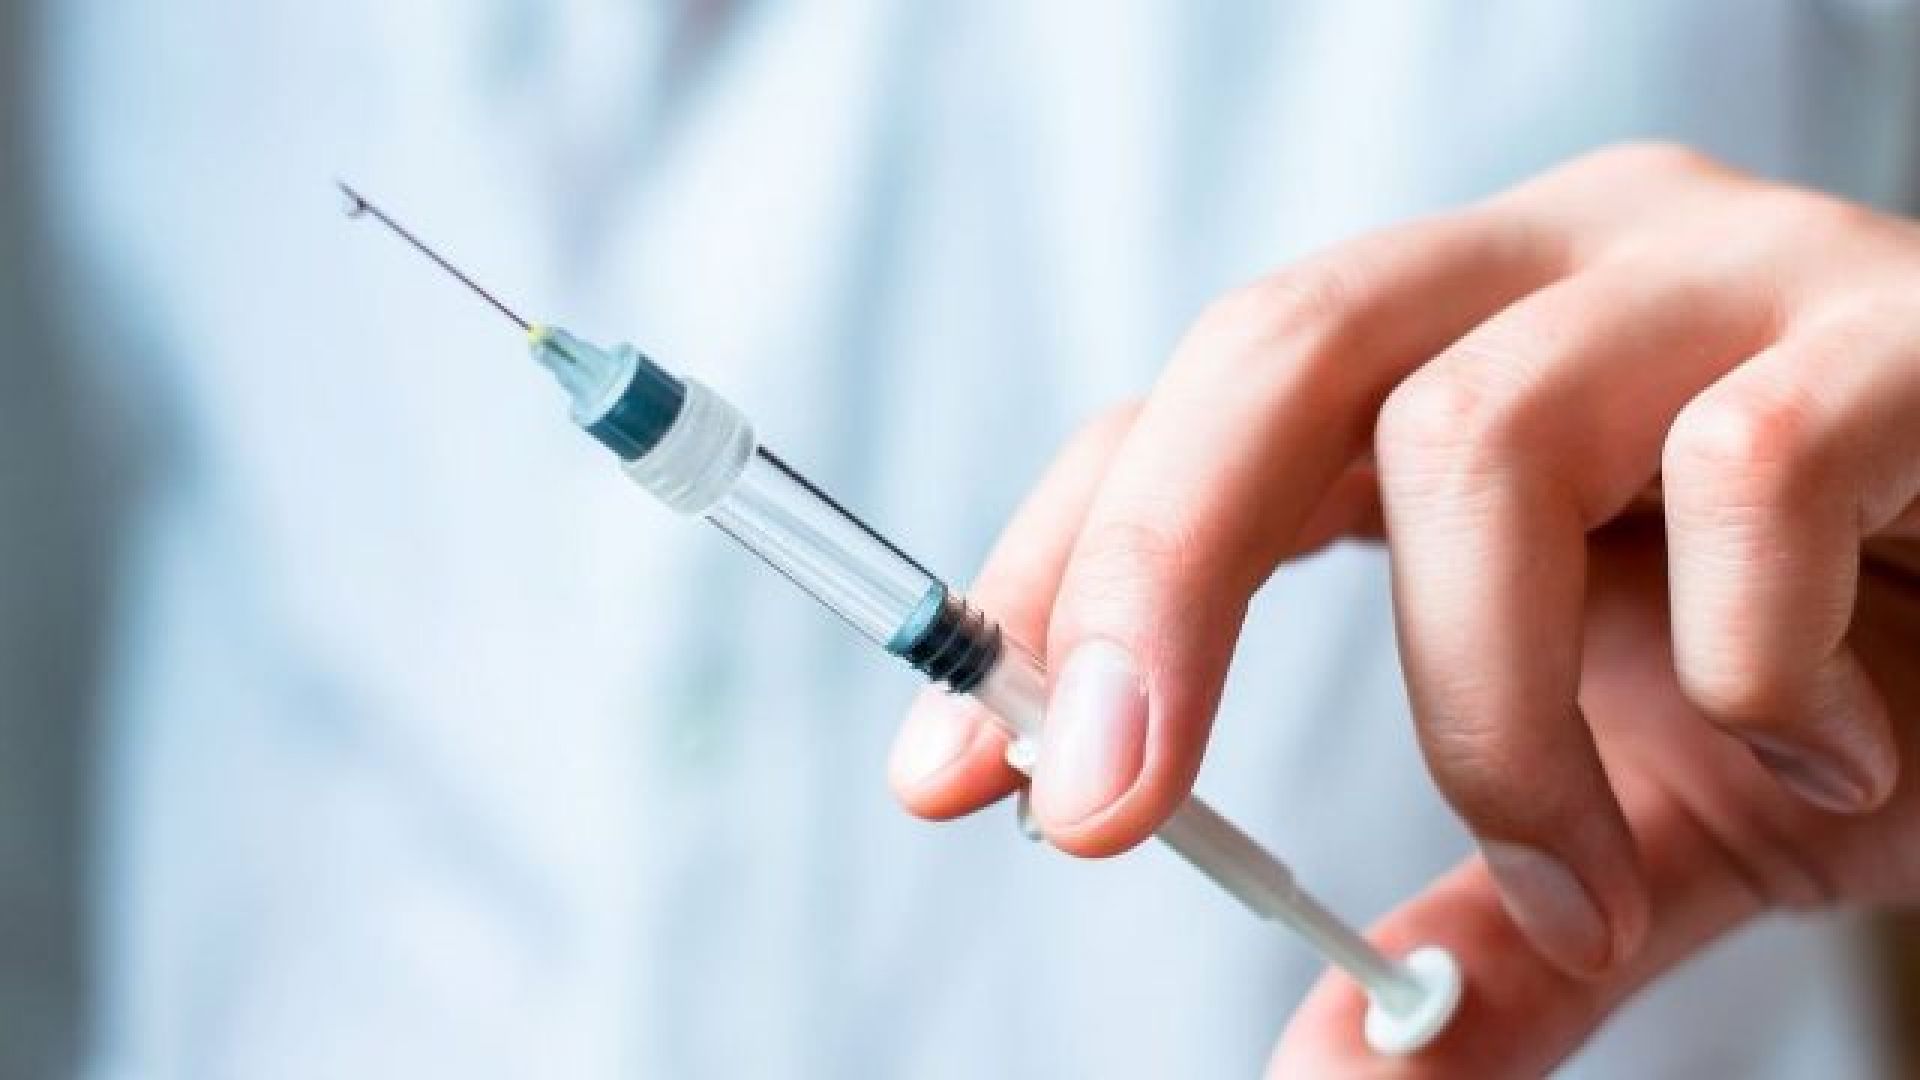 Έλληνας επιστήμονας έφτιαξε υπερ-εμβόλιο για τη γρίπη (βίντεο-φωτο)